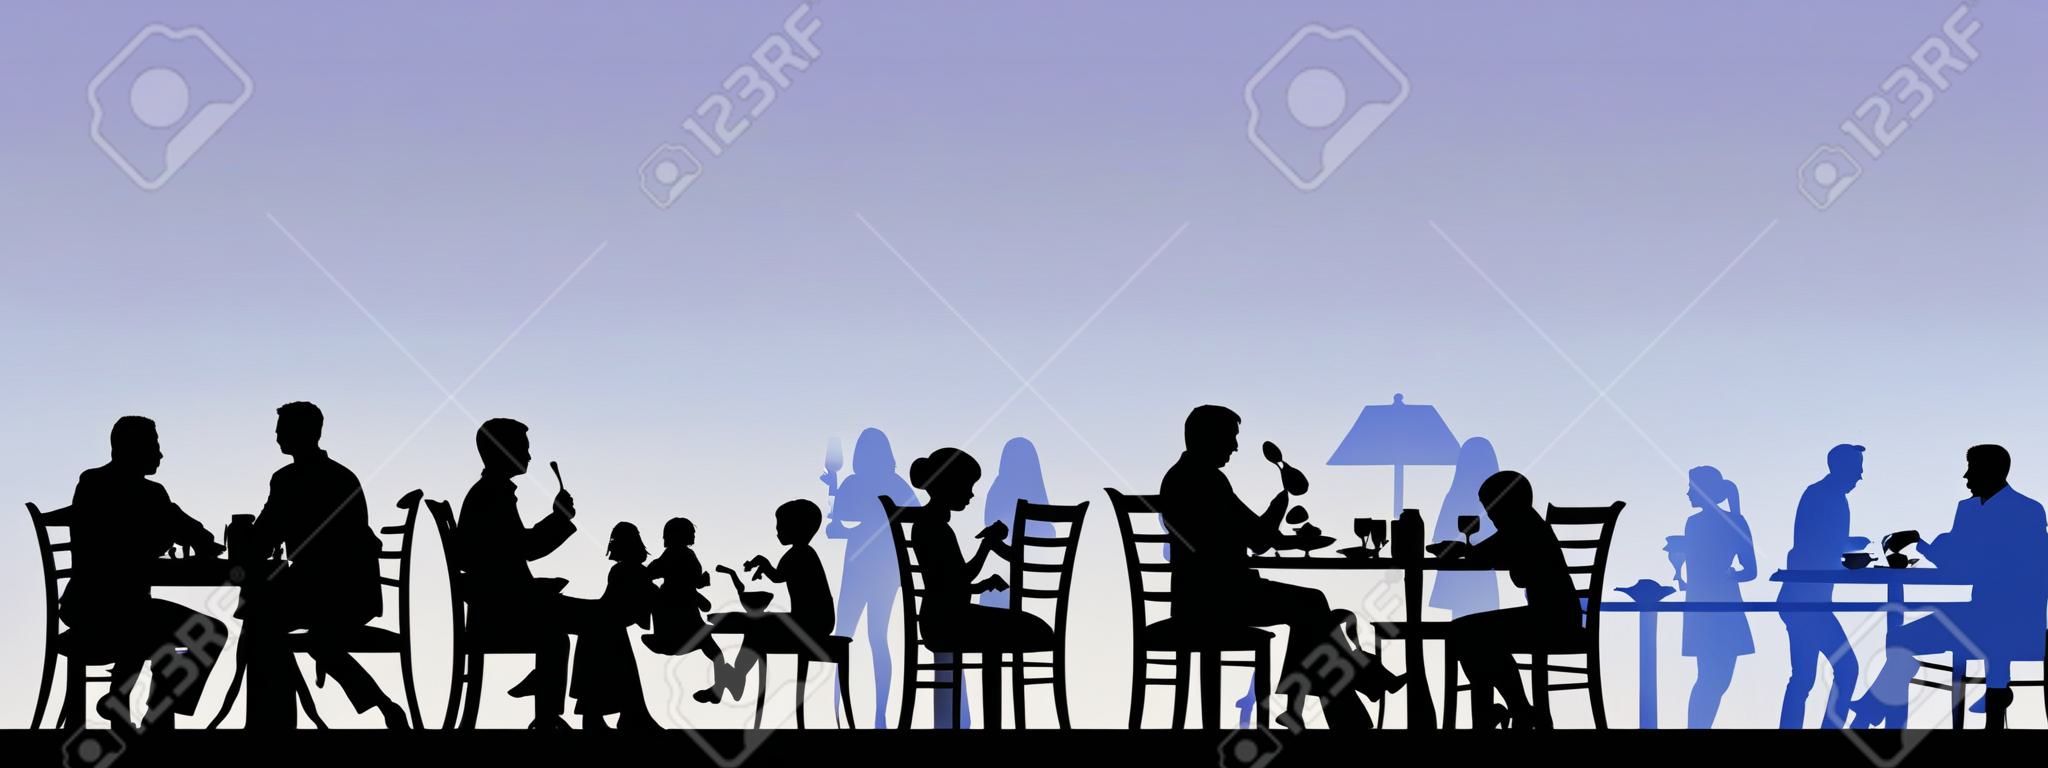 Silueta de personas comiendo en un restaurante con todas las figuras como objetos separados en capas